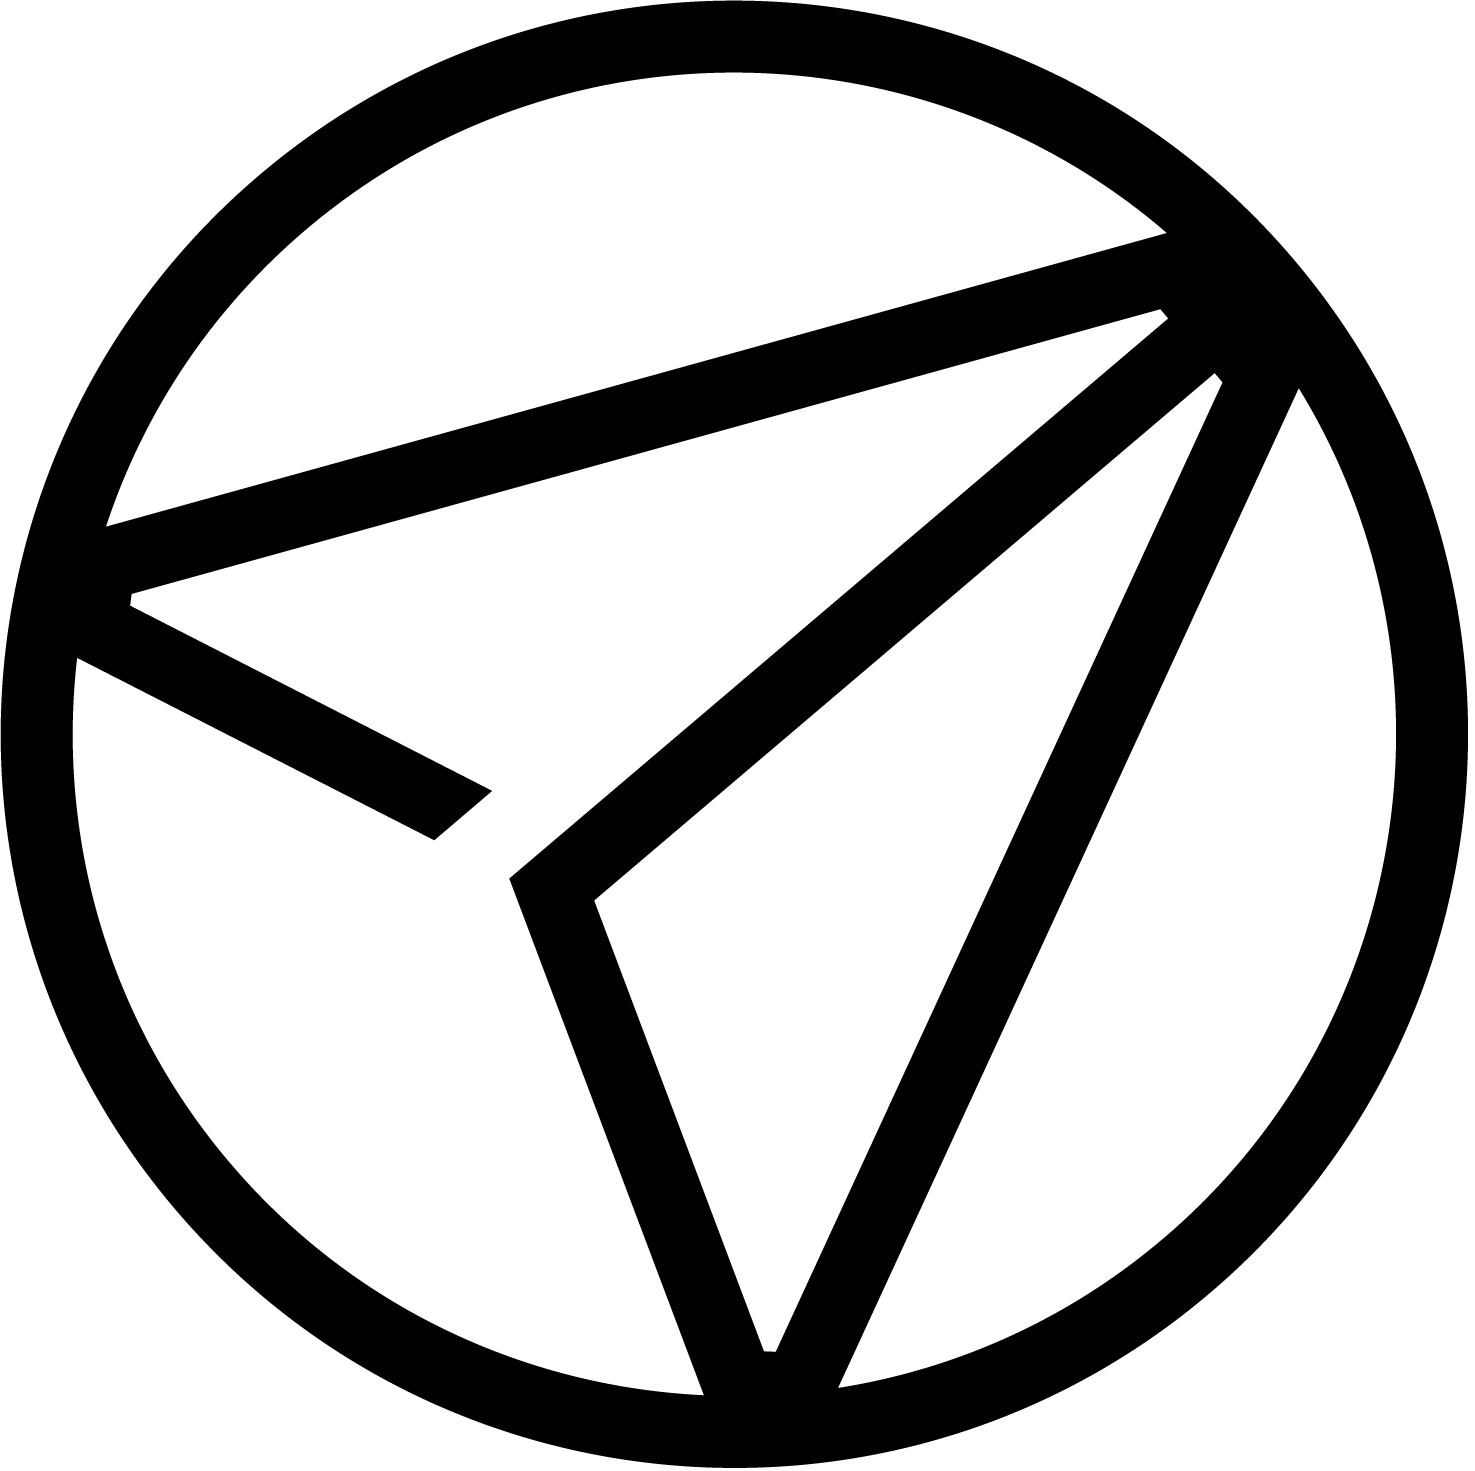 Symbol logo - Compare